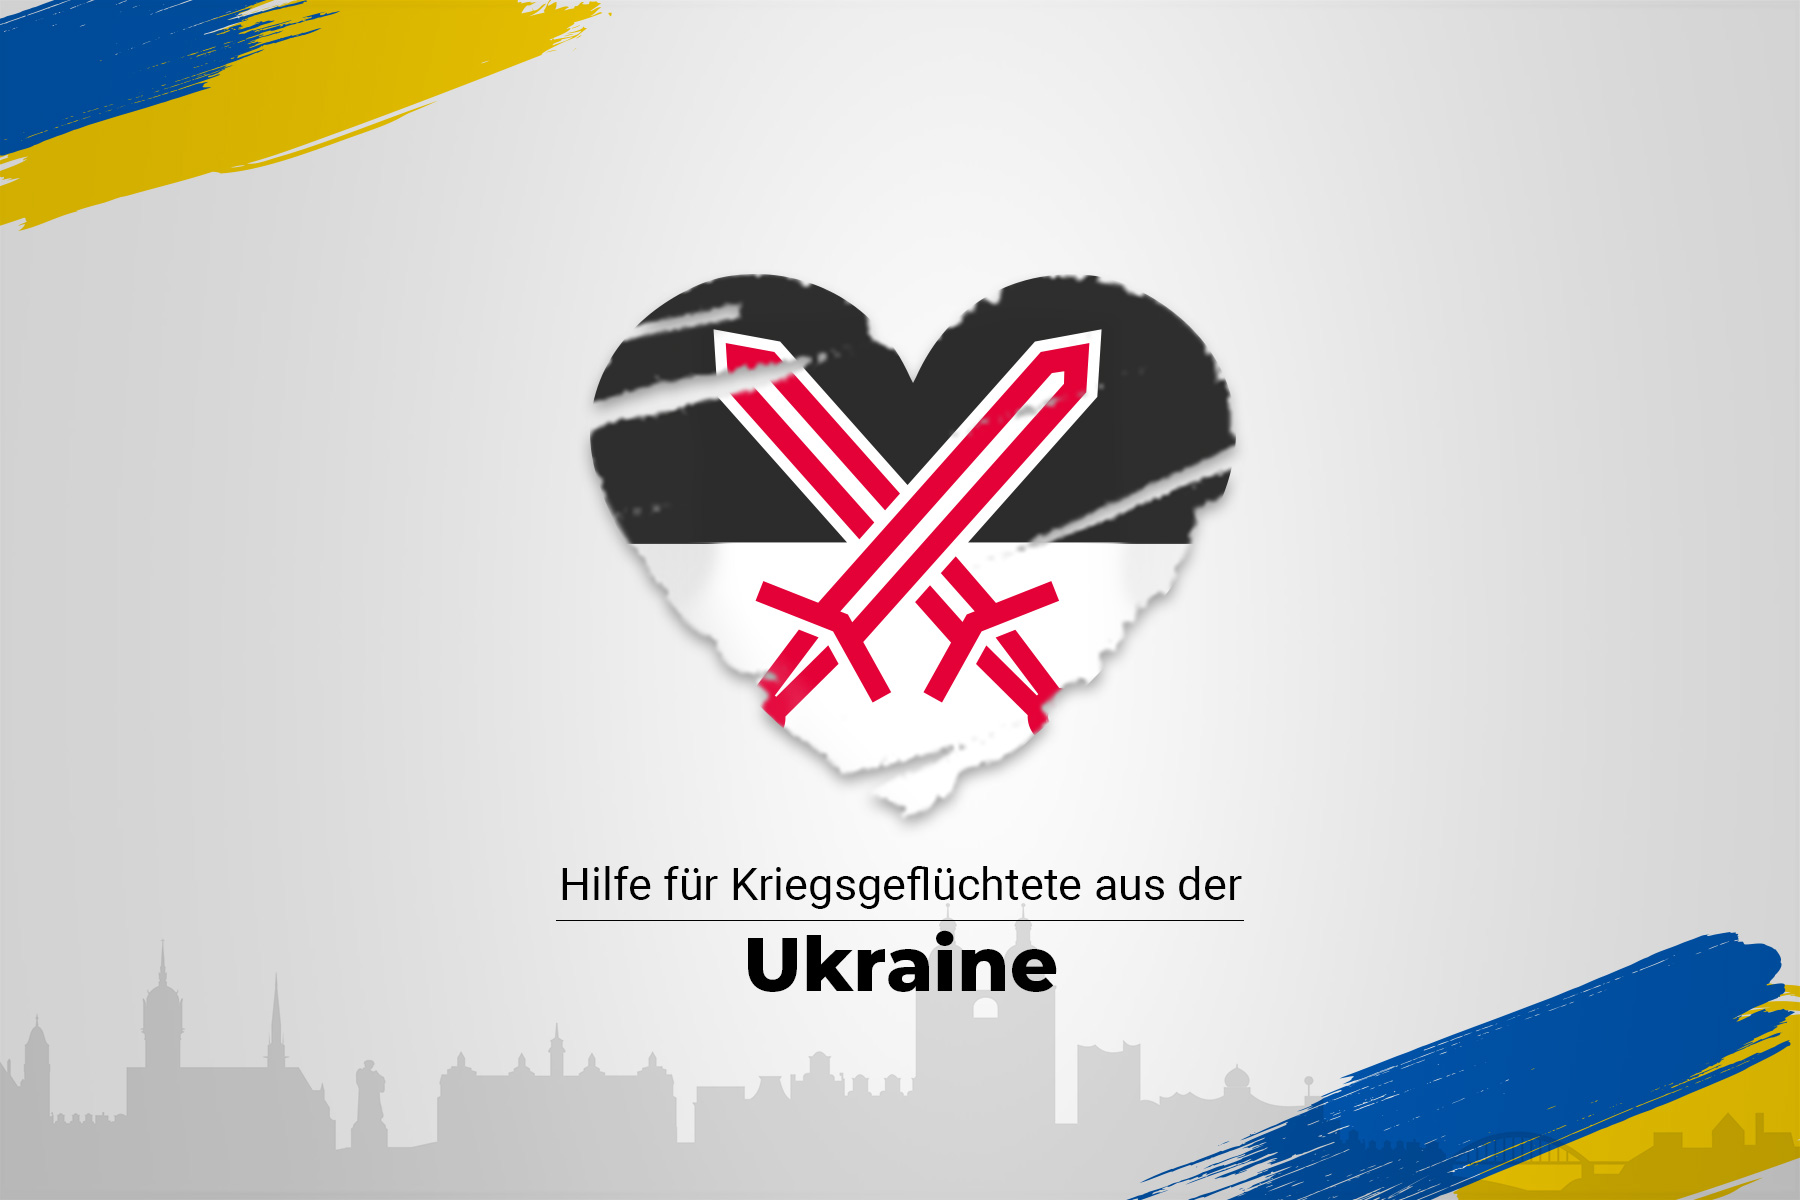 Logo als Herz und Schriftzug - Hilfe für Kriegsgeflüchtete aus der Ukraine